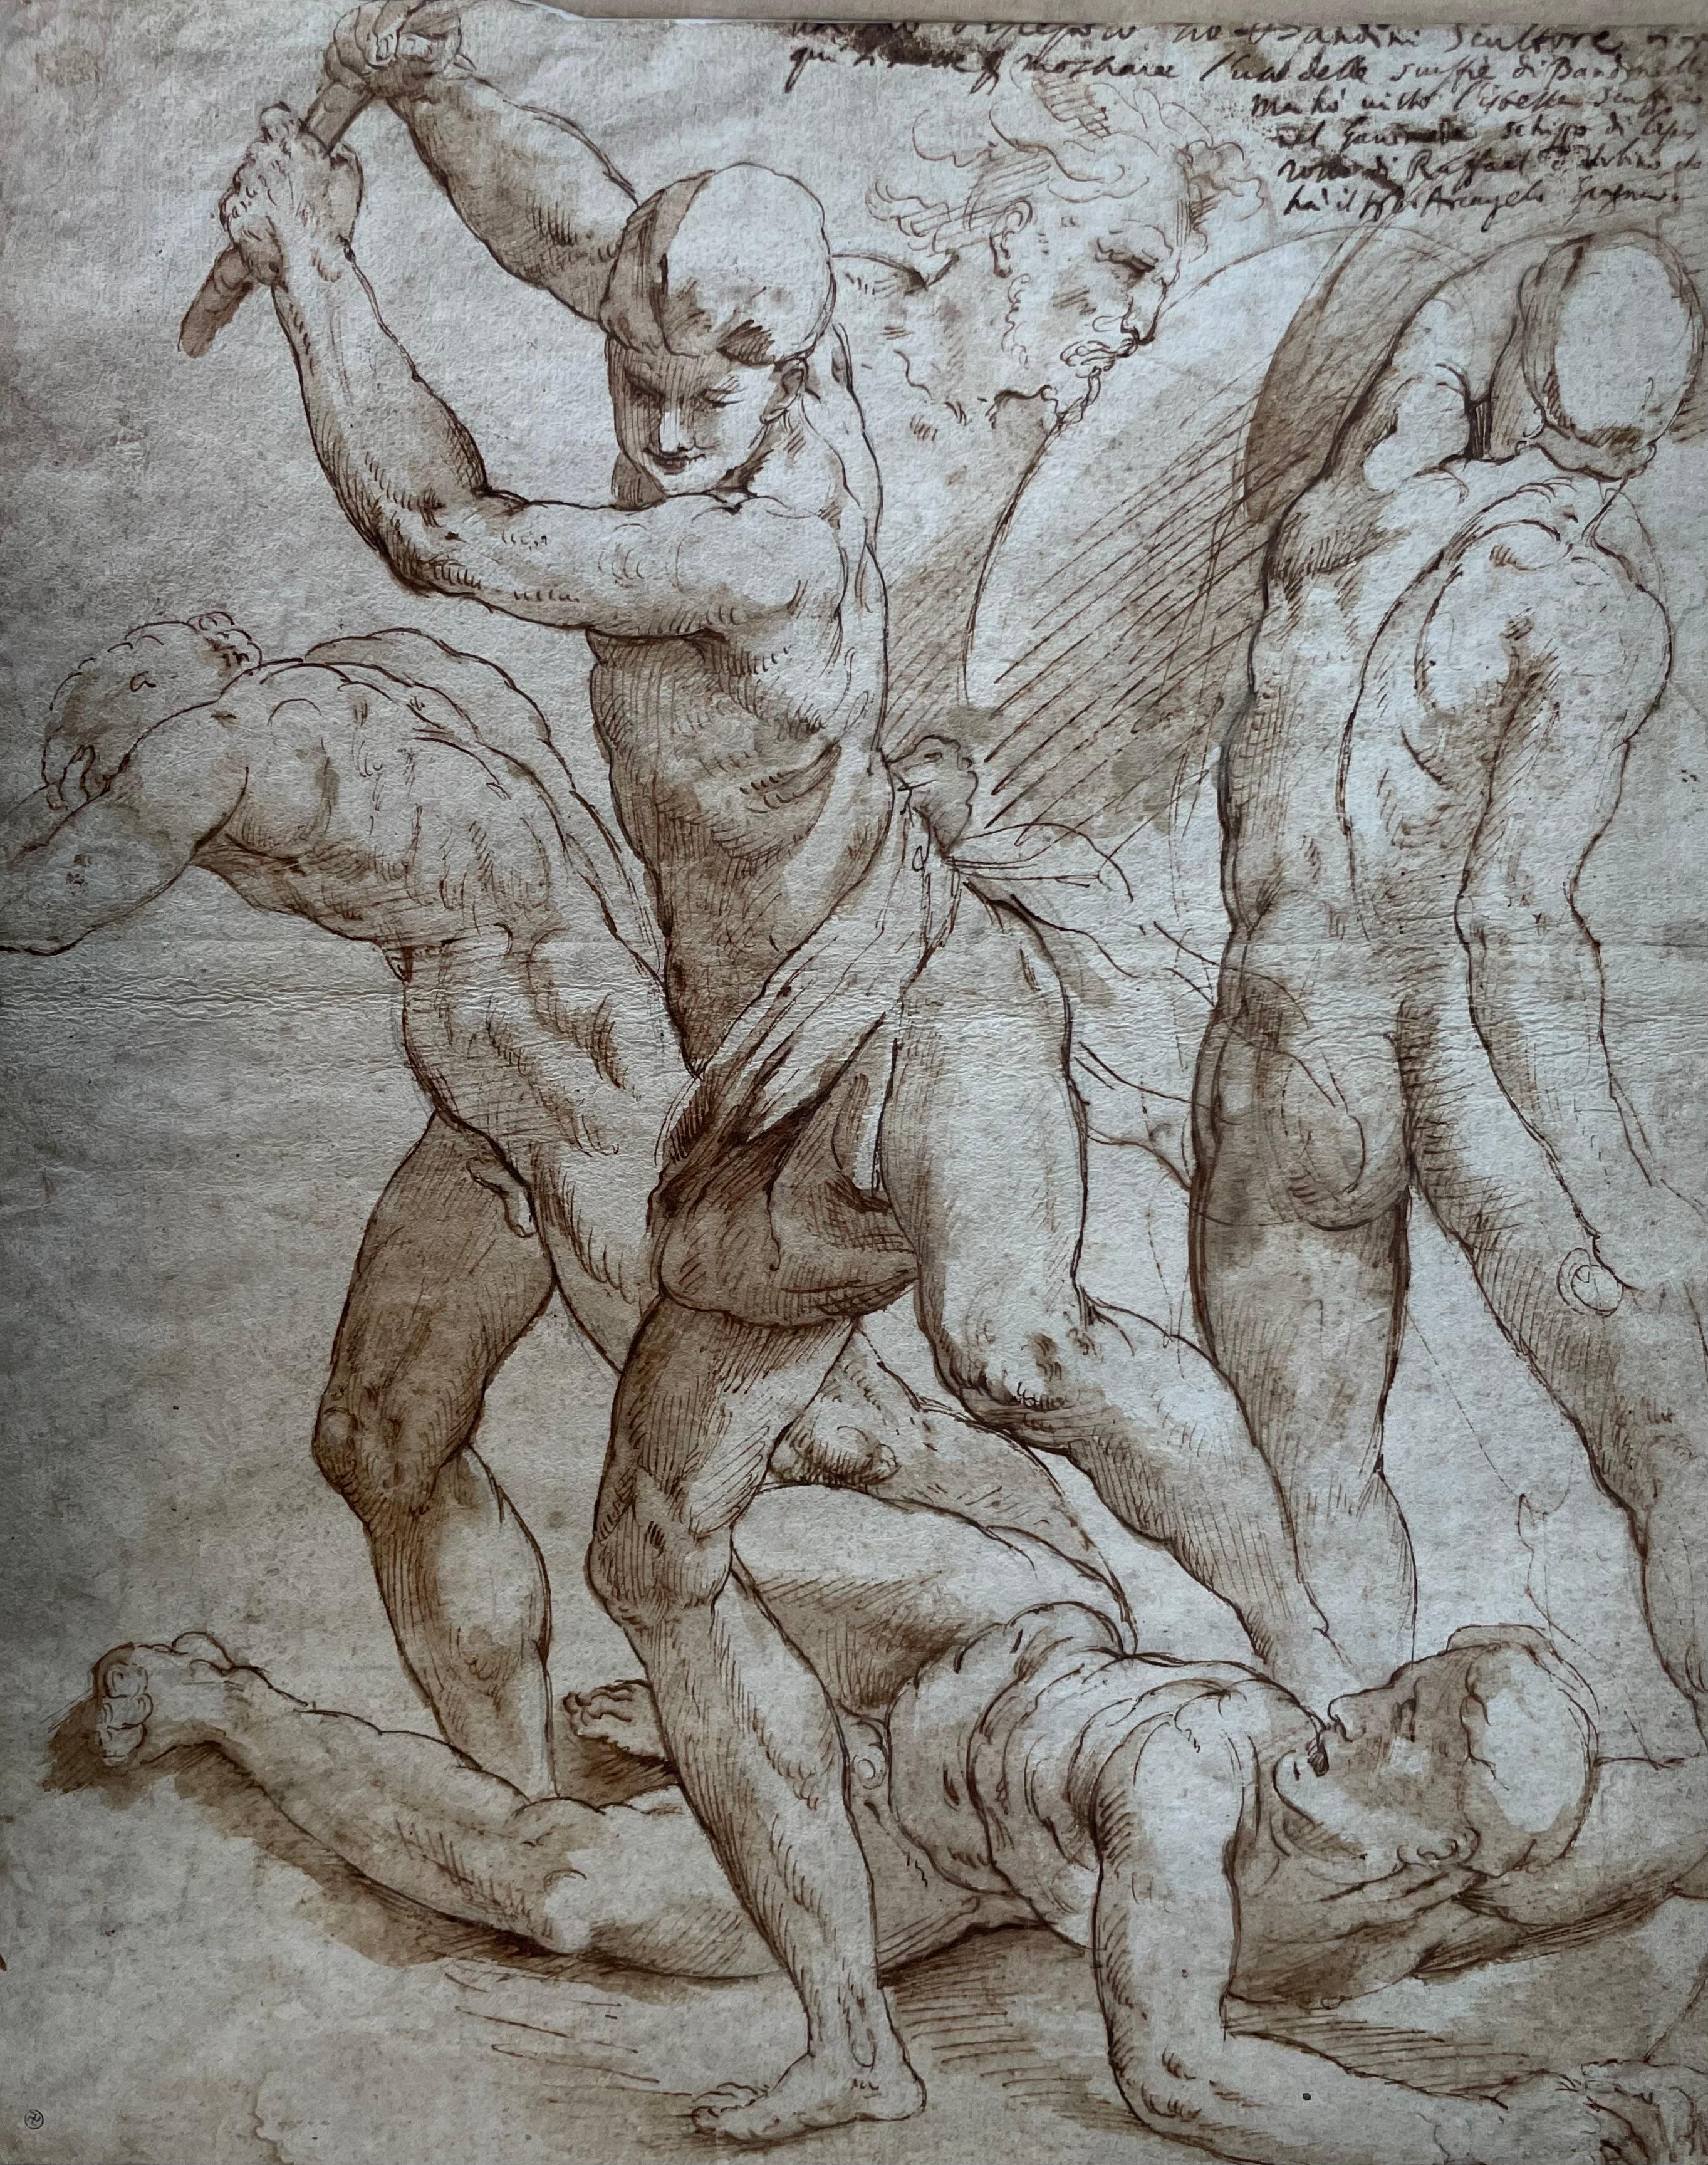 Jacopo Zanguidi Dit Bertoja (1544 - 1574) - Important 16th Century Drawing - Art by Jacopo Zanguidi BERTOJA